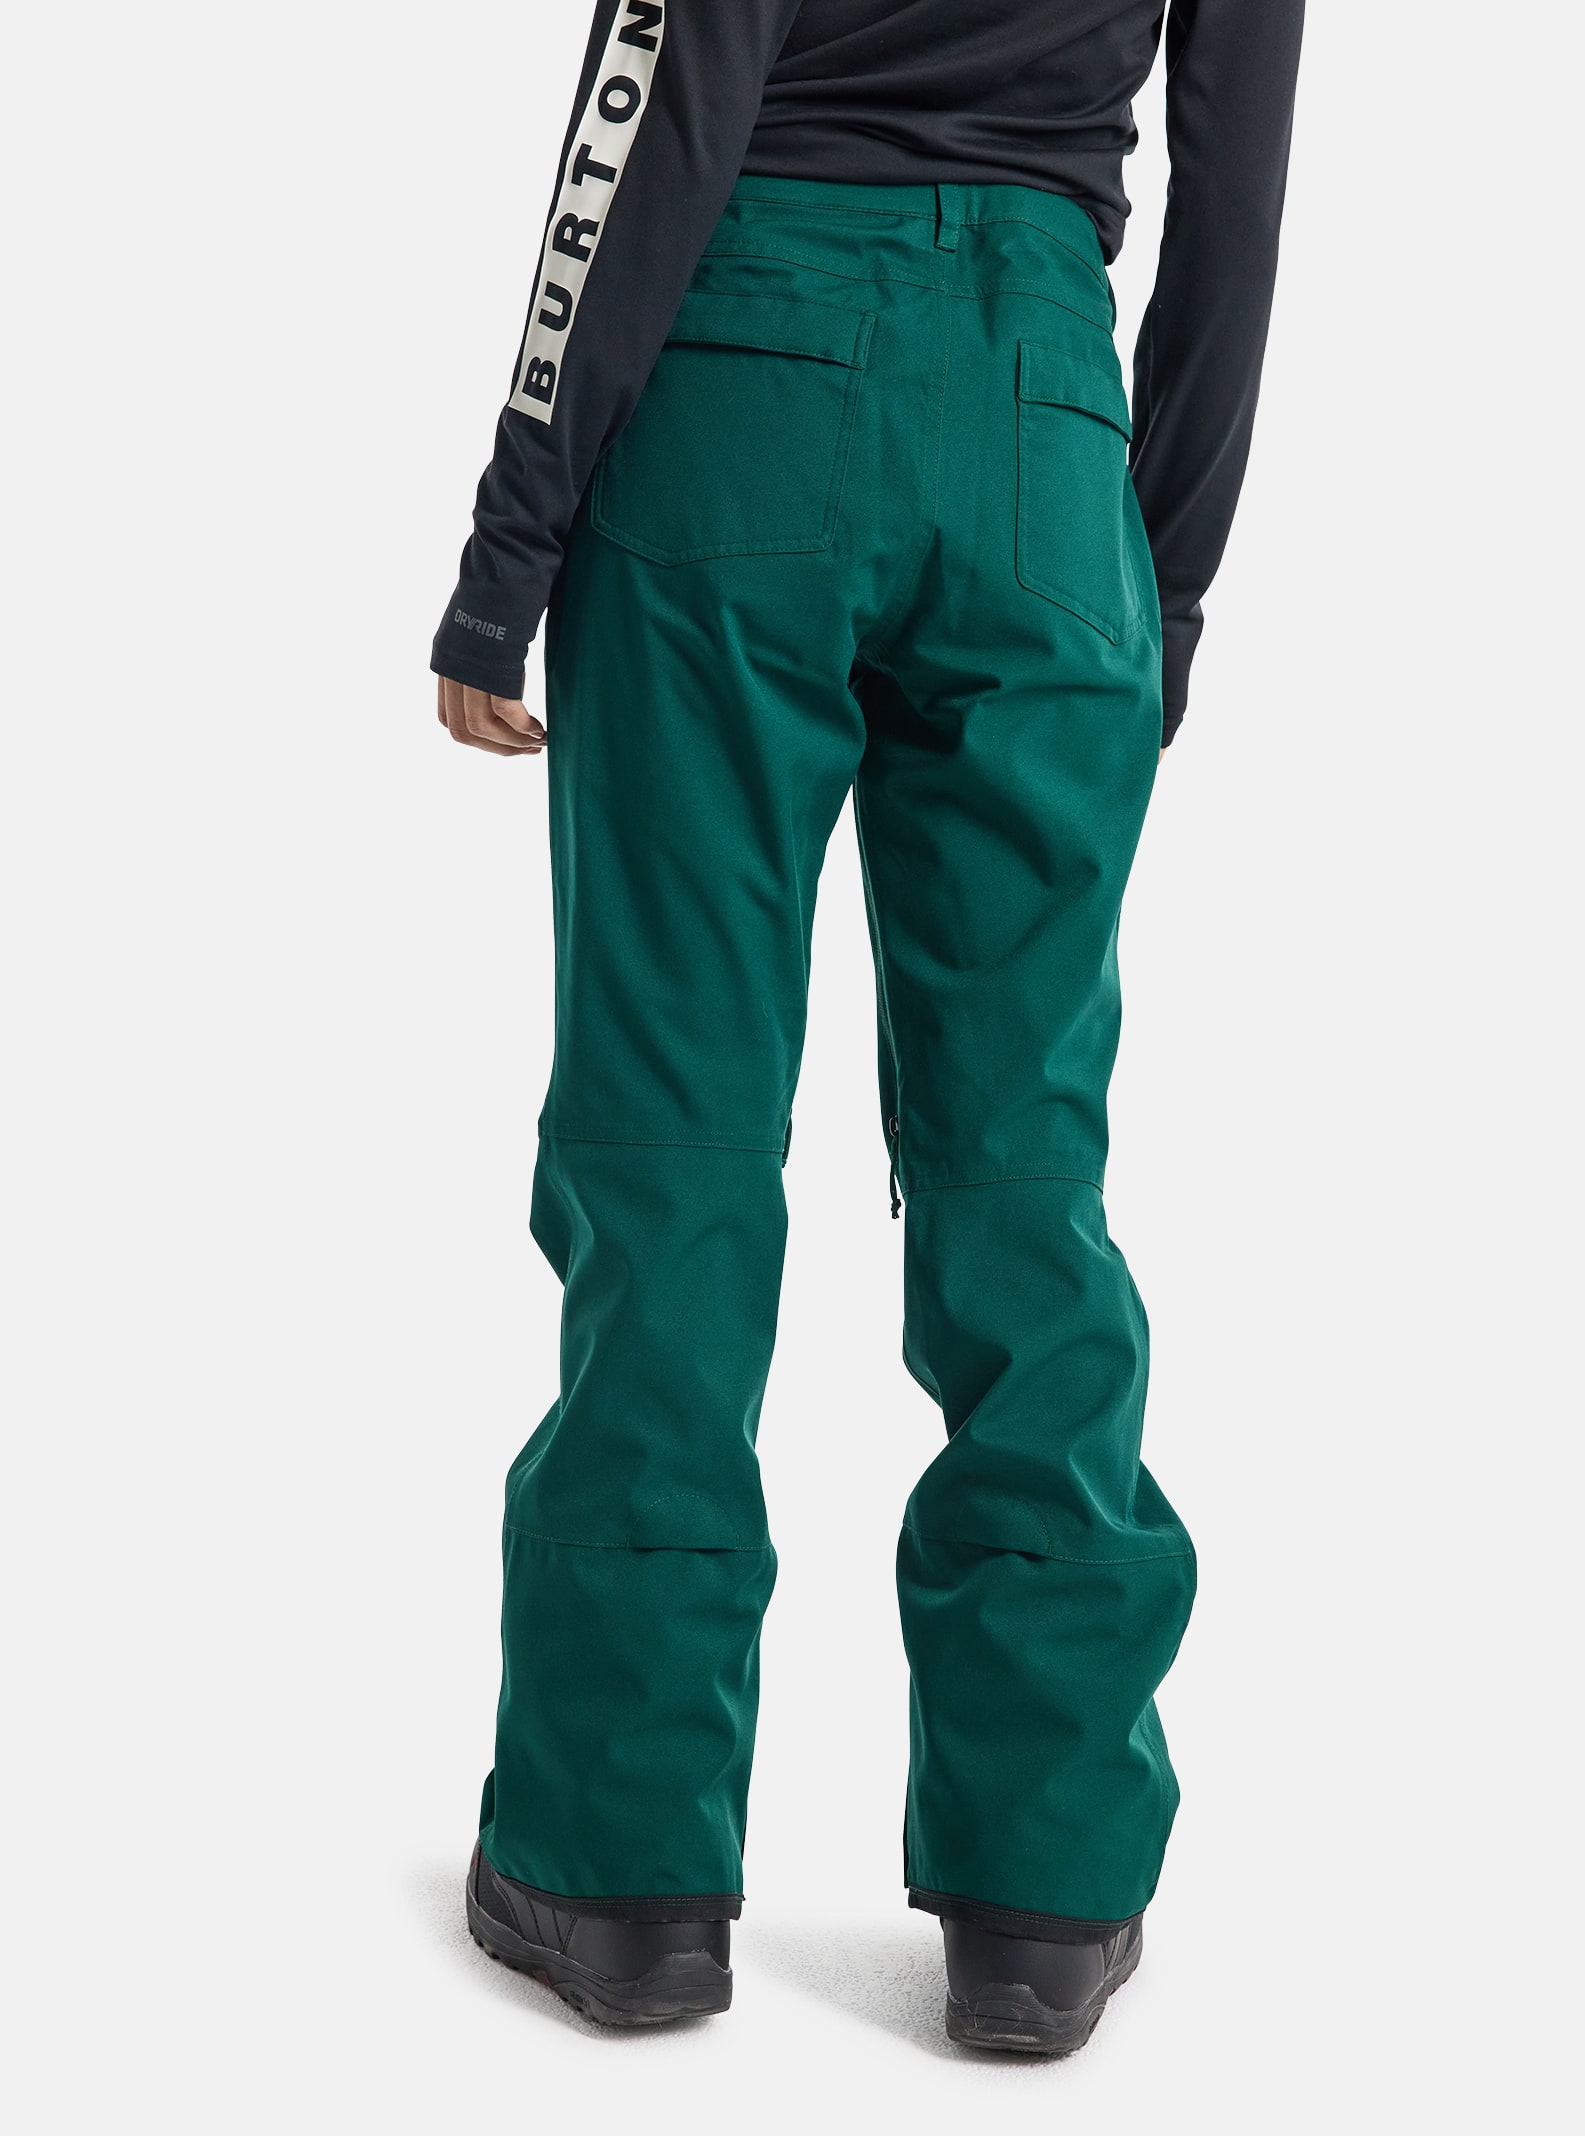 various colors/sizes 2017 Burton Men's or Women's Snowboard pants 